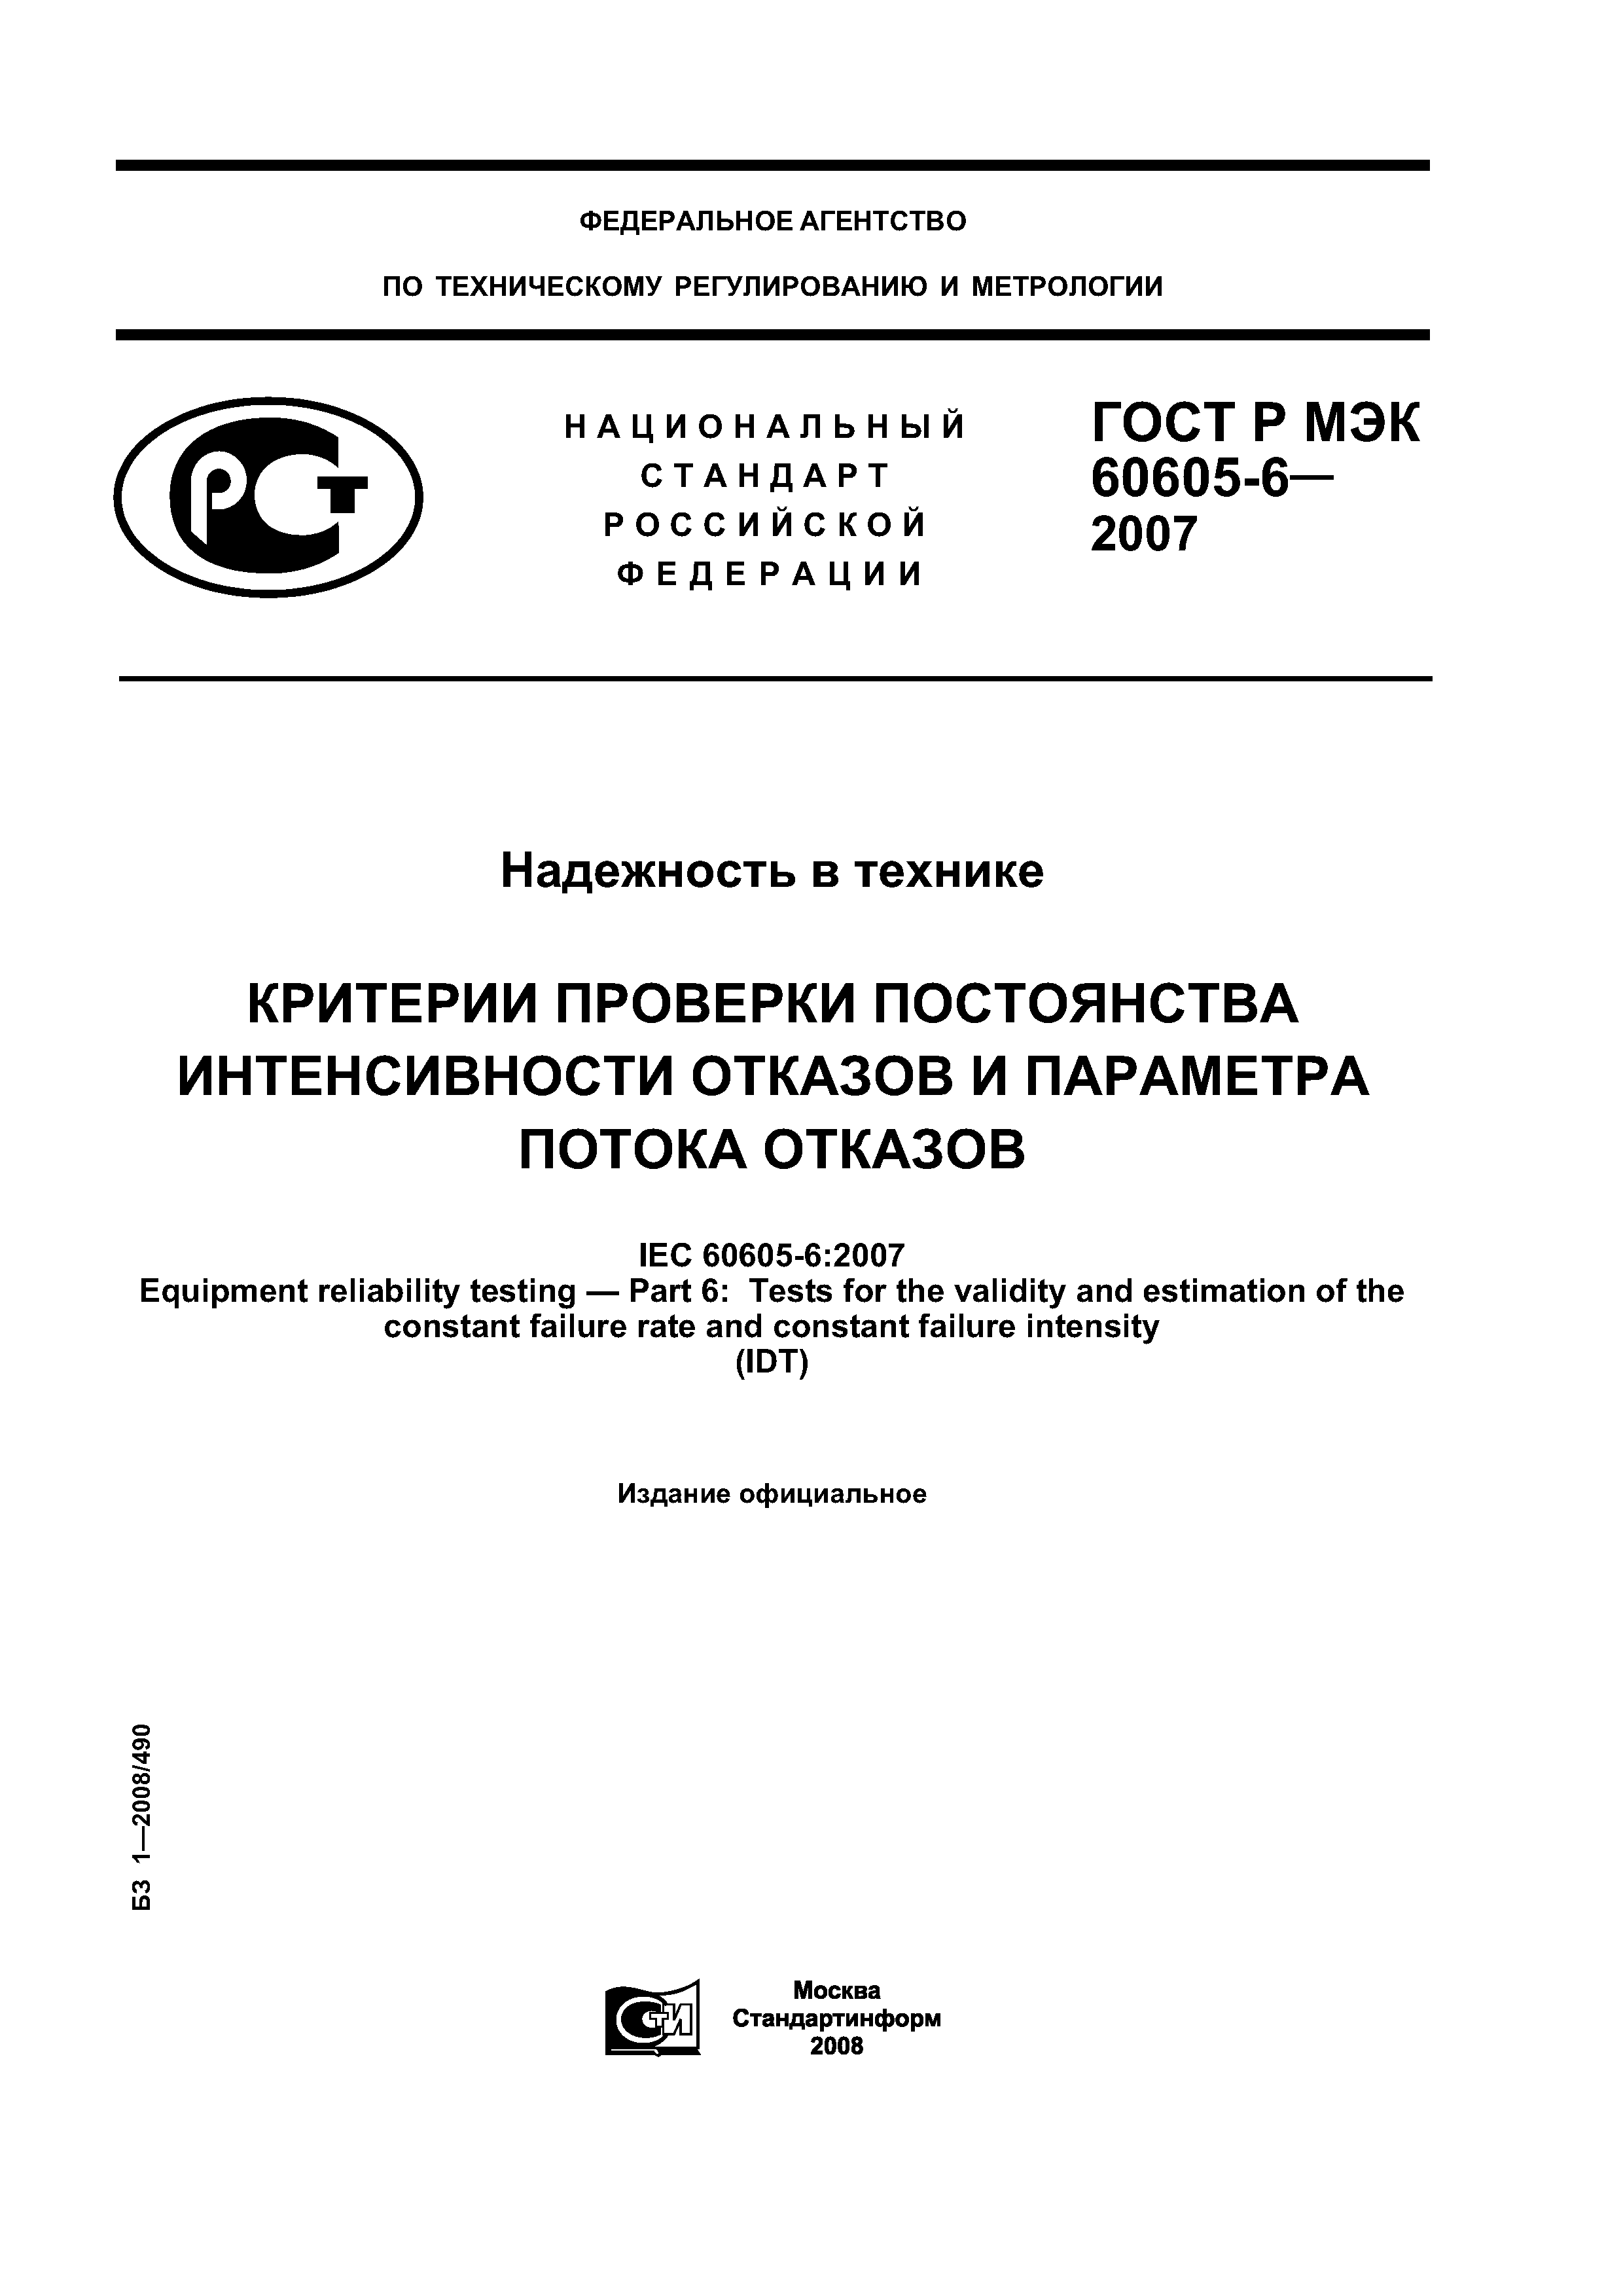 ГОСТ Р МЭК 60605-6-2007